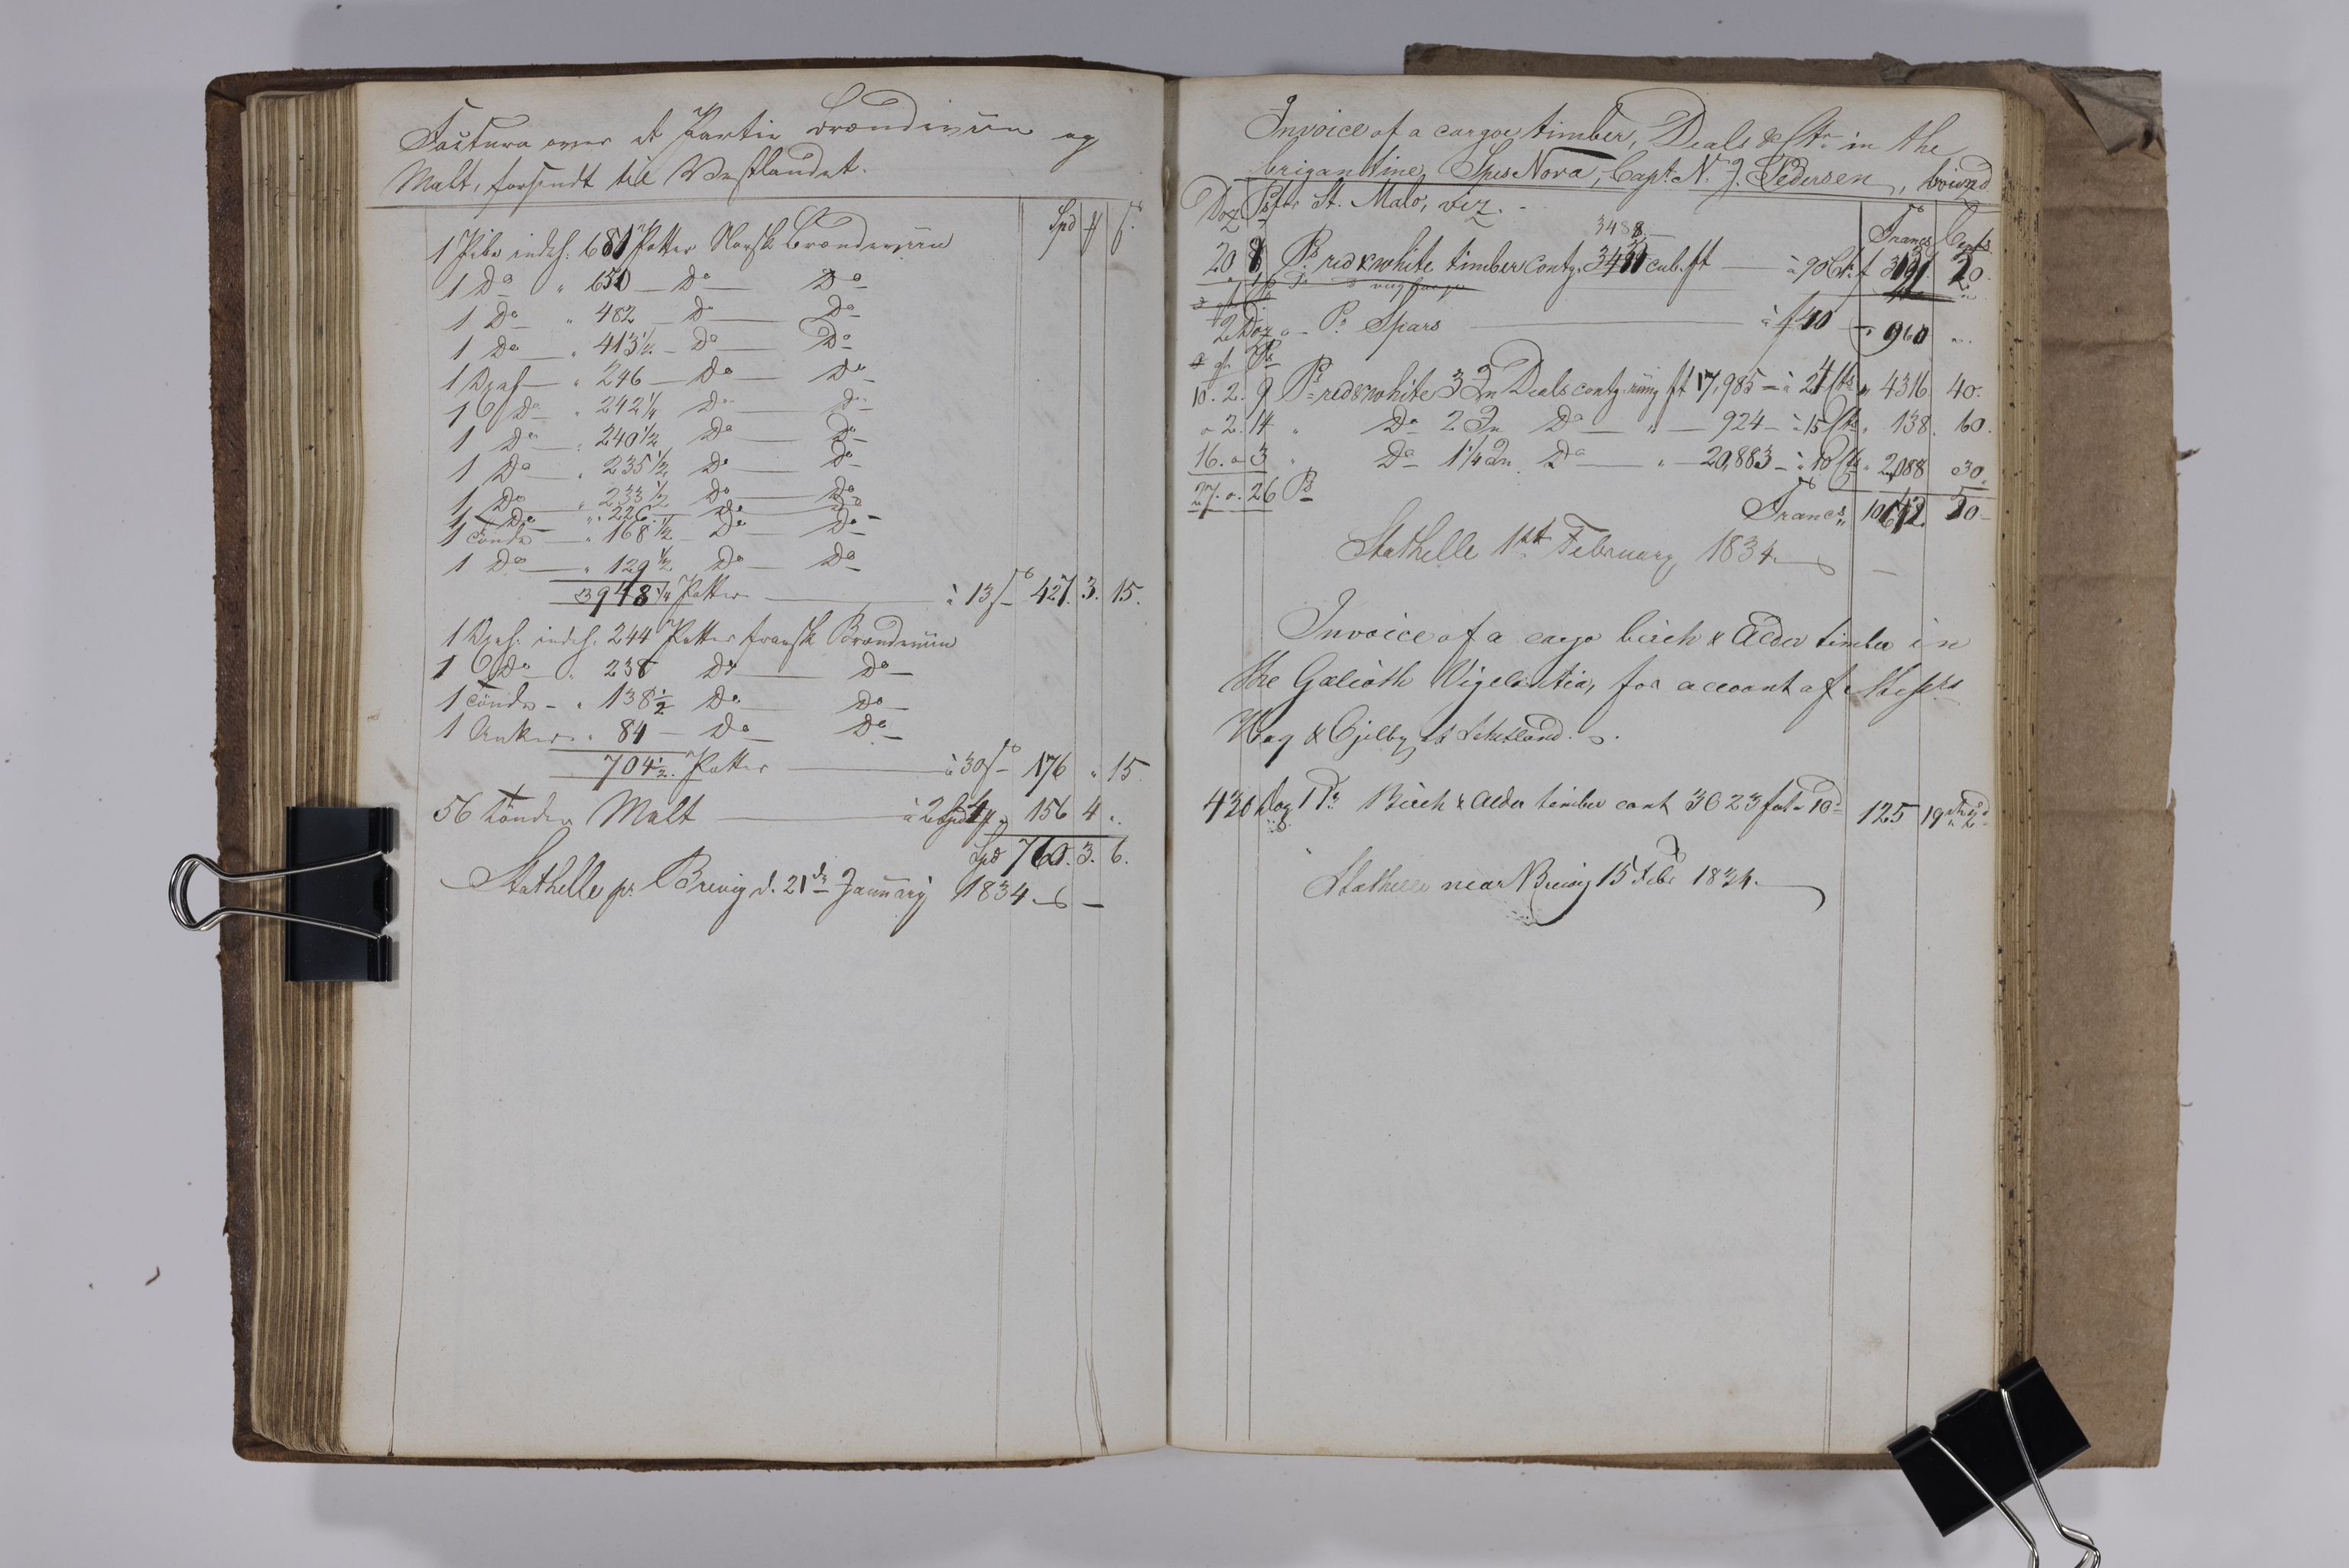 , Priscourant-tømmerpriser, 1834-38, 1834-1838, s. 103